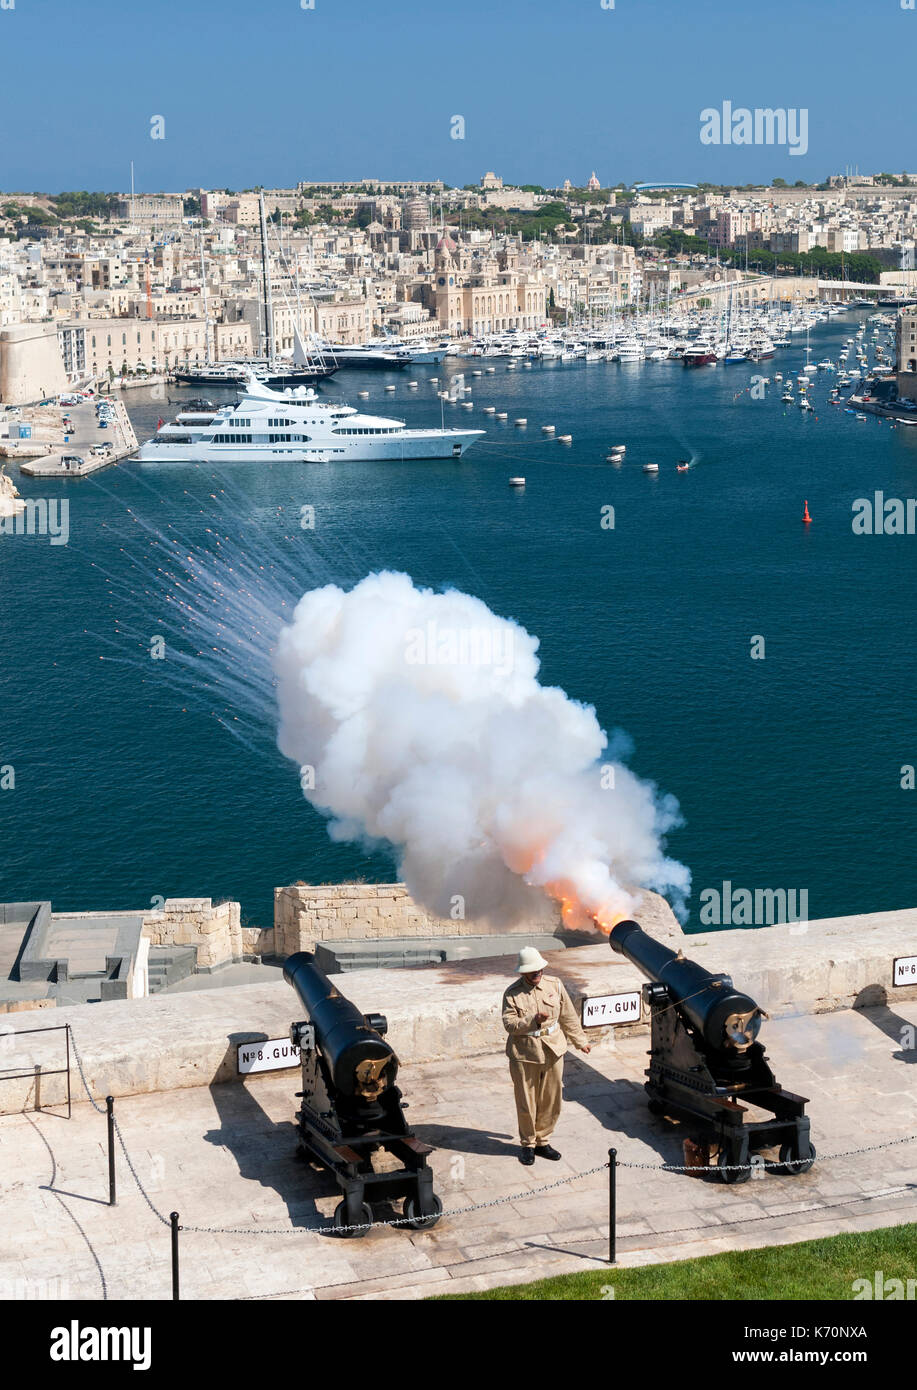 Die 12:00 Uhr Kanone aus dem Salutierte Batterie in Valletta, der Hauptstadt von Malta, gefeuert. Stockfoto